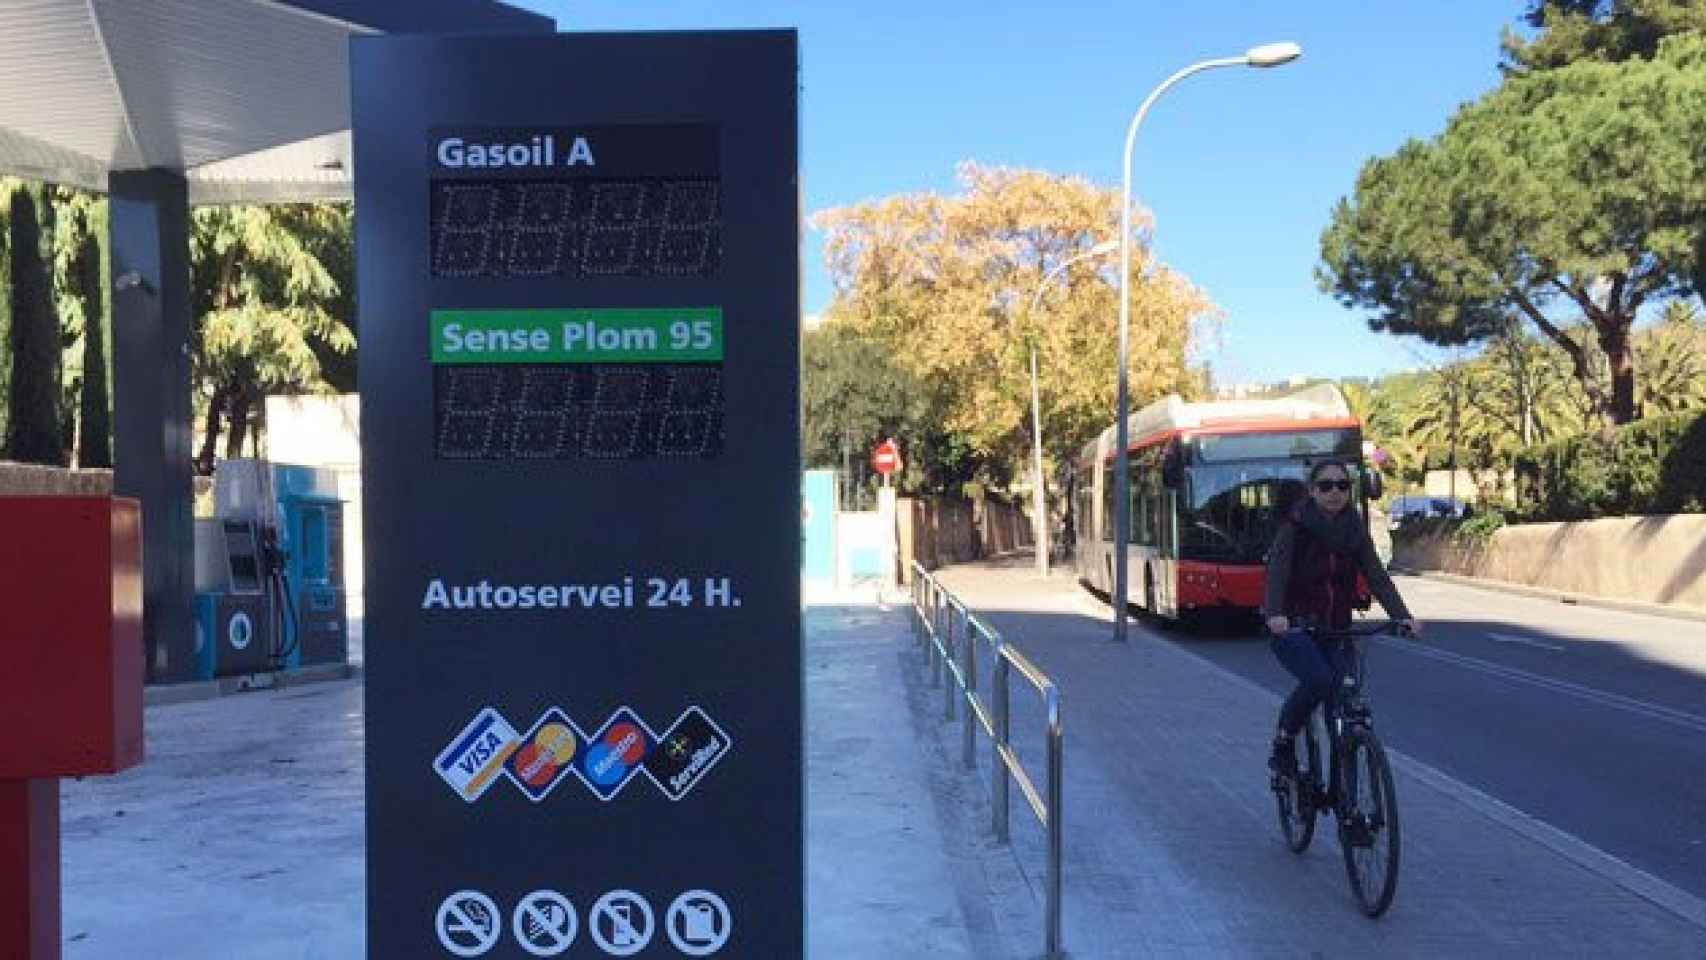 La nueva gasolinera Green Oil de Sarrià y una ciclista bajando por la calle Eduardo Conde / CG